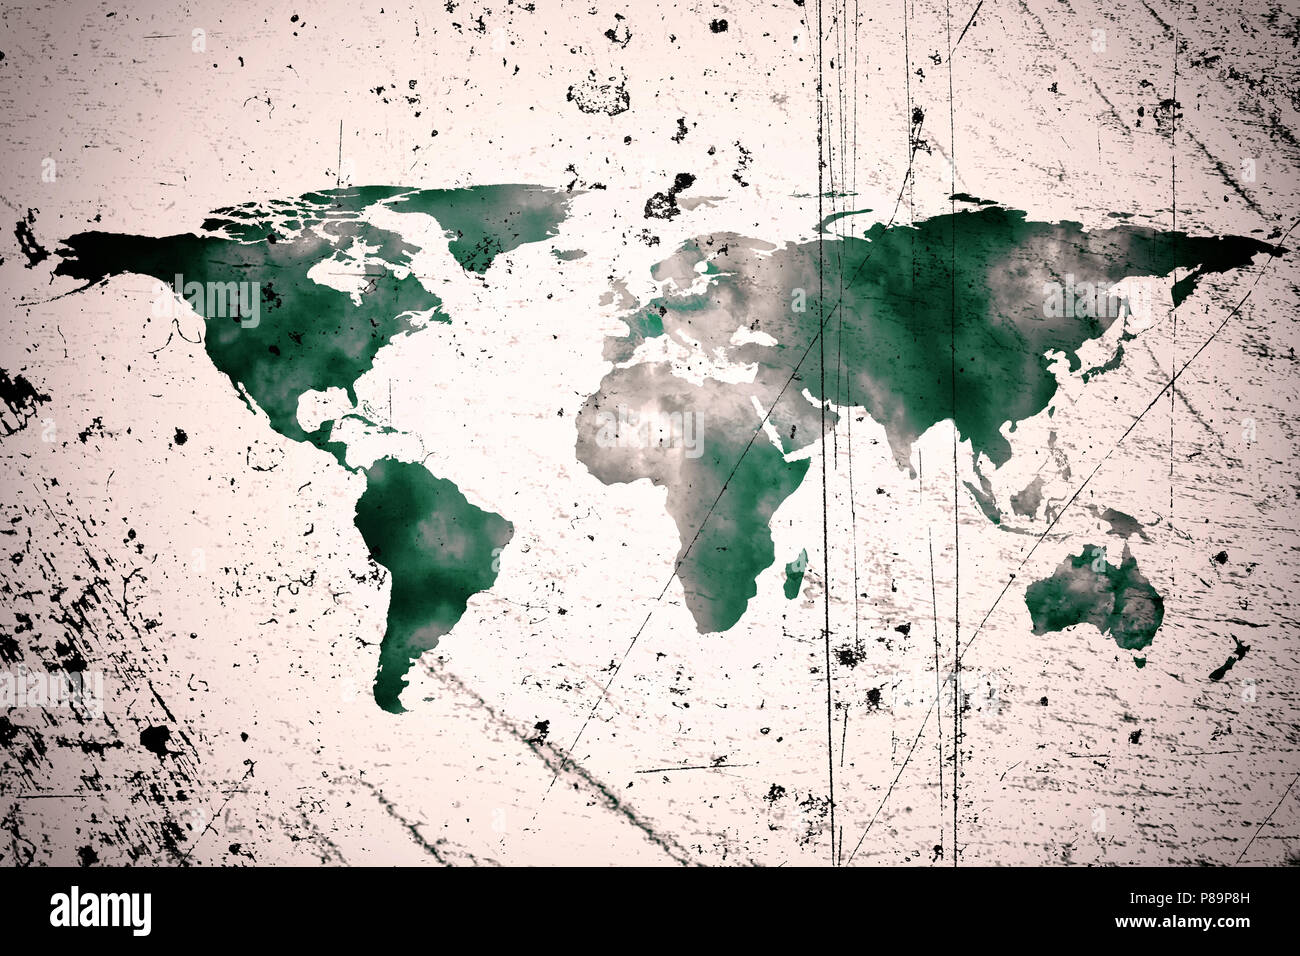 Immagine concettuale del mondo piatto mappa e fumo. La NASA mappa piatta del mondo immagine utilizzata per arredare questa immagine. Foto Stock